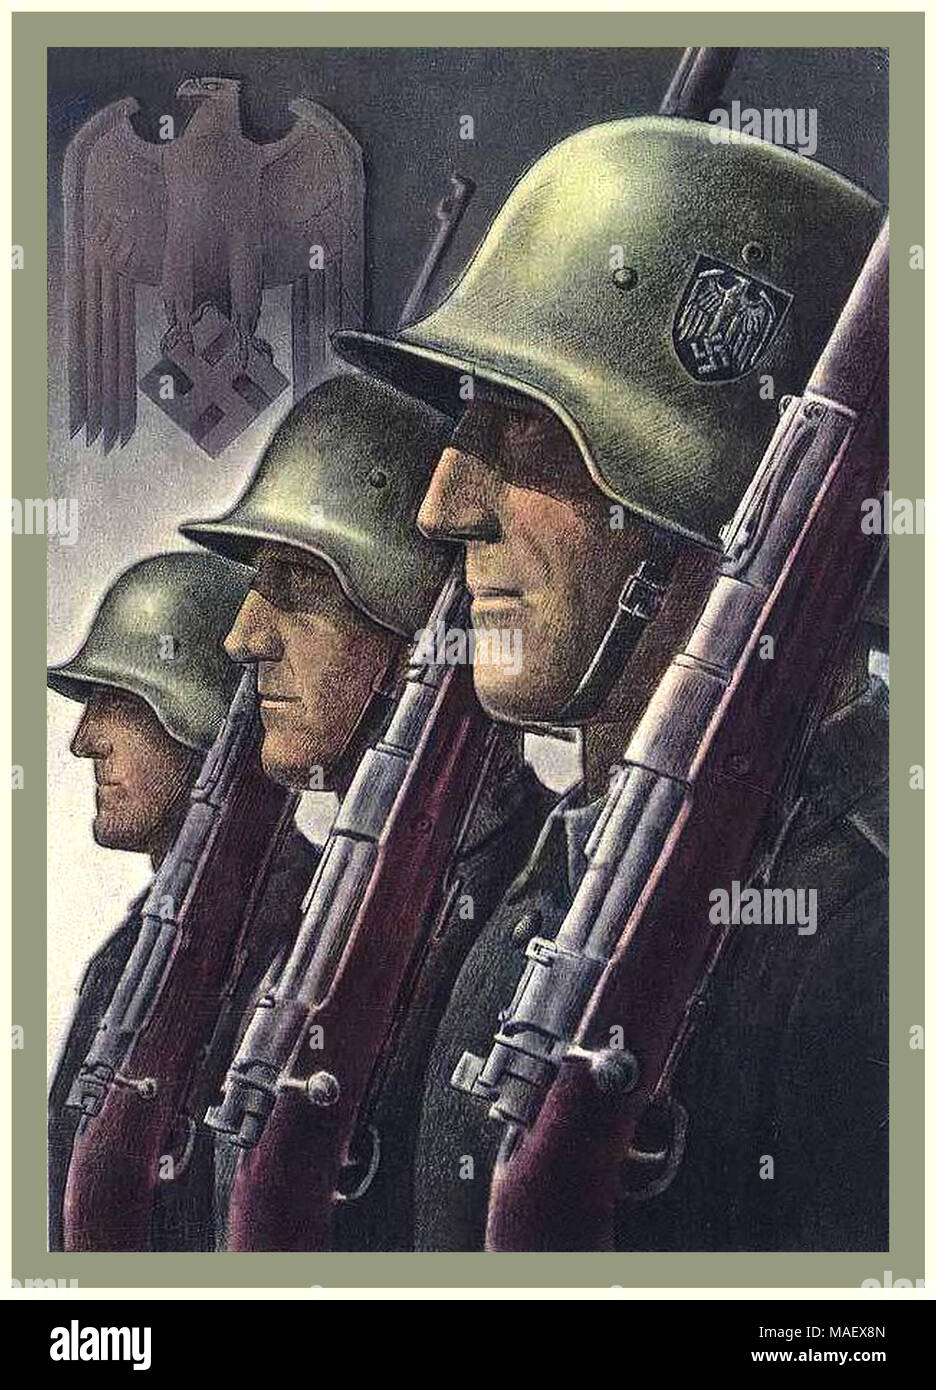 Vintage 1940er Nazi-Deutschland 2. Weltkrieg Propaganda Wehrmacht Armee Soldat Militär Rekrutierung Poster mit Adler und Swastika Emblem Stockfoto